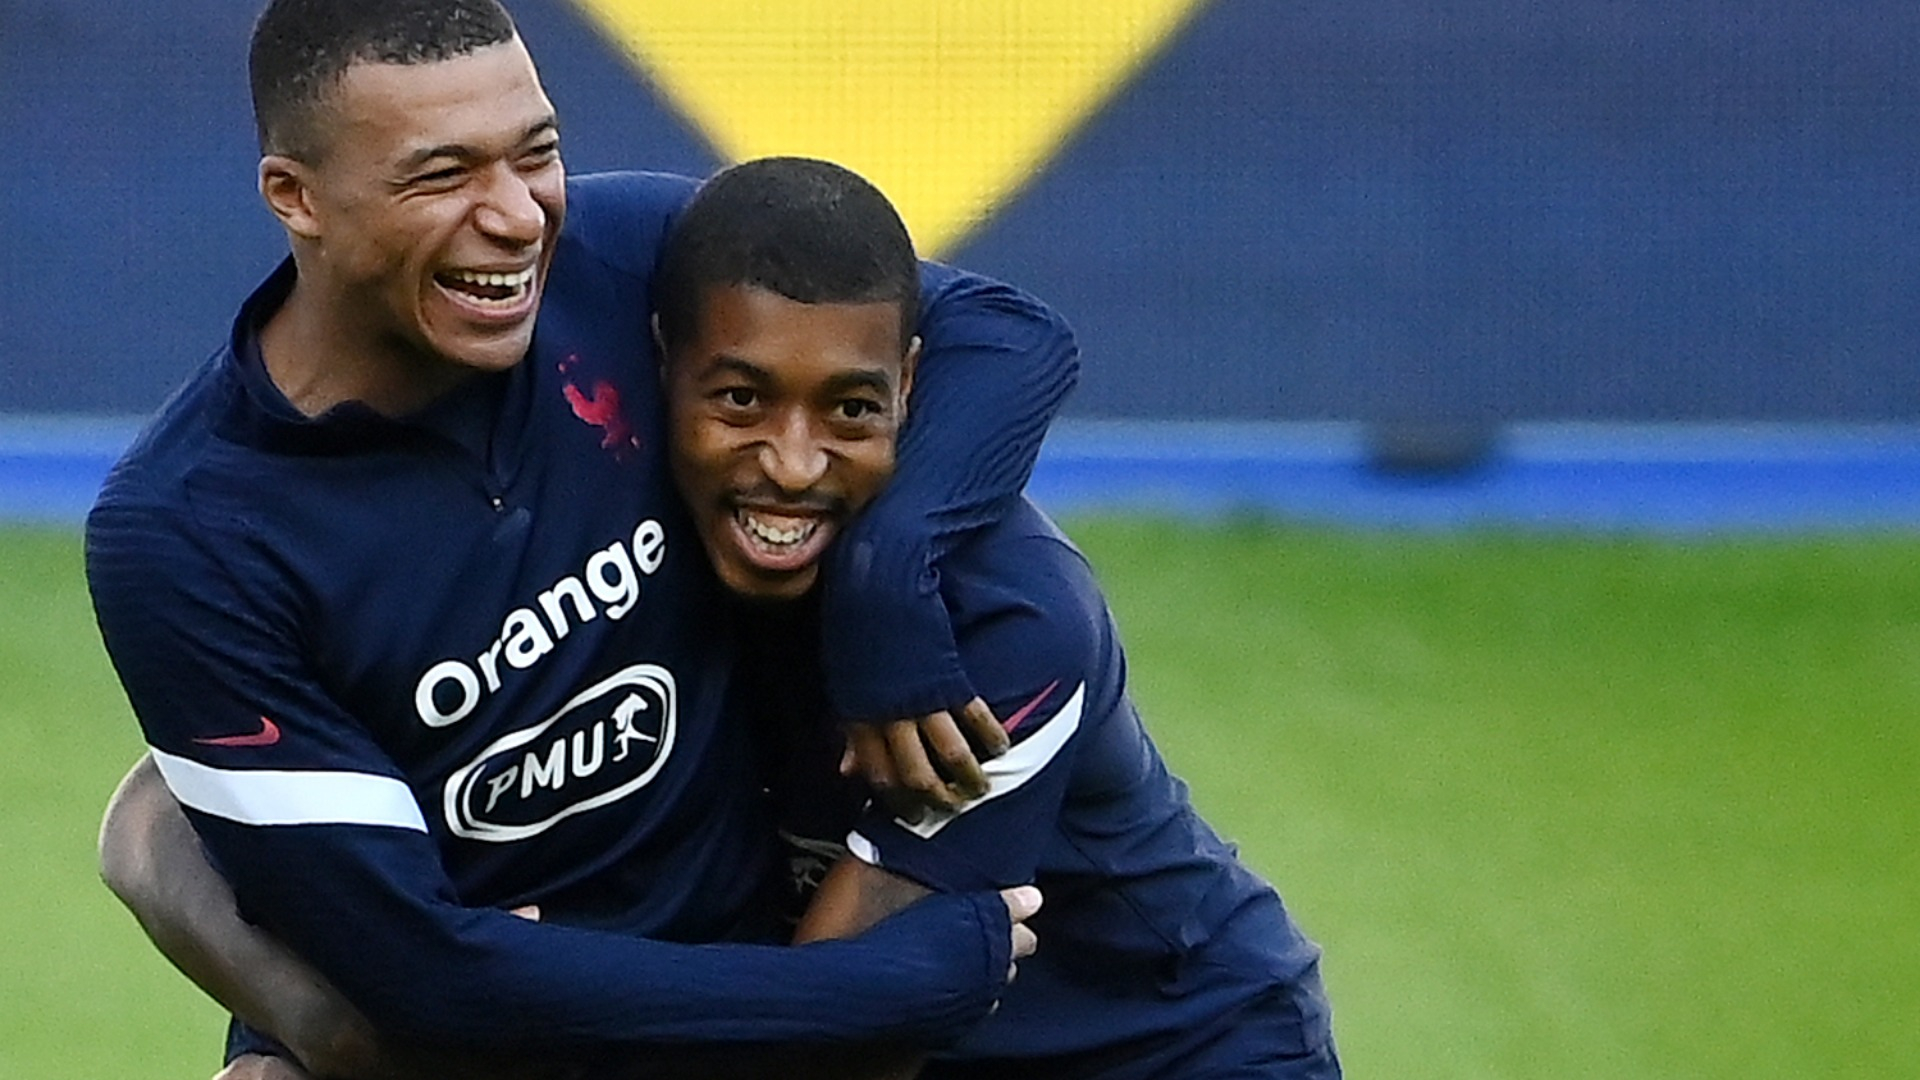 Lens-PSG preview: Mbappé smiling despite World Cup hurt